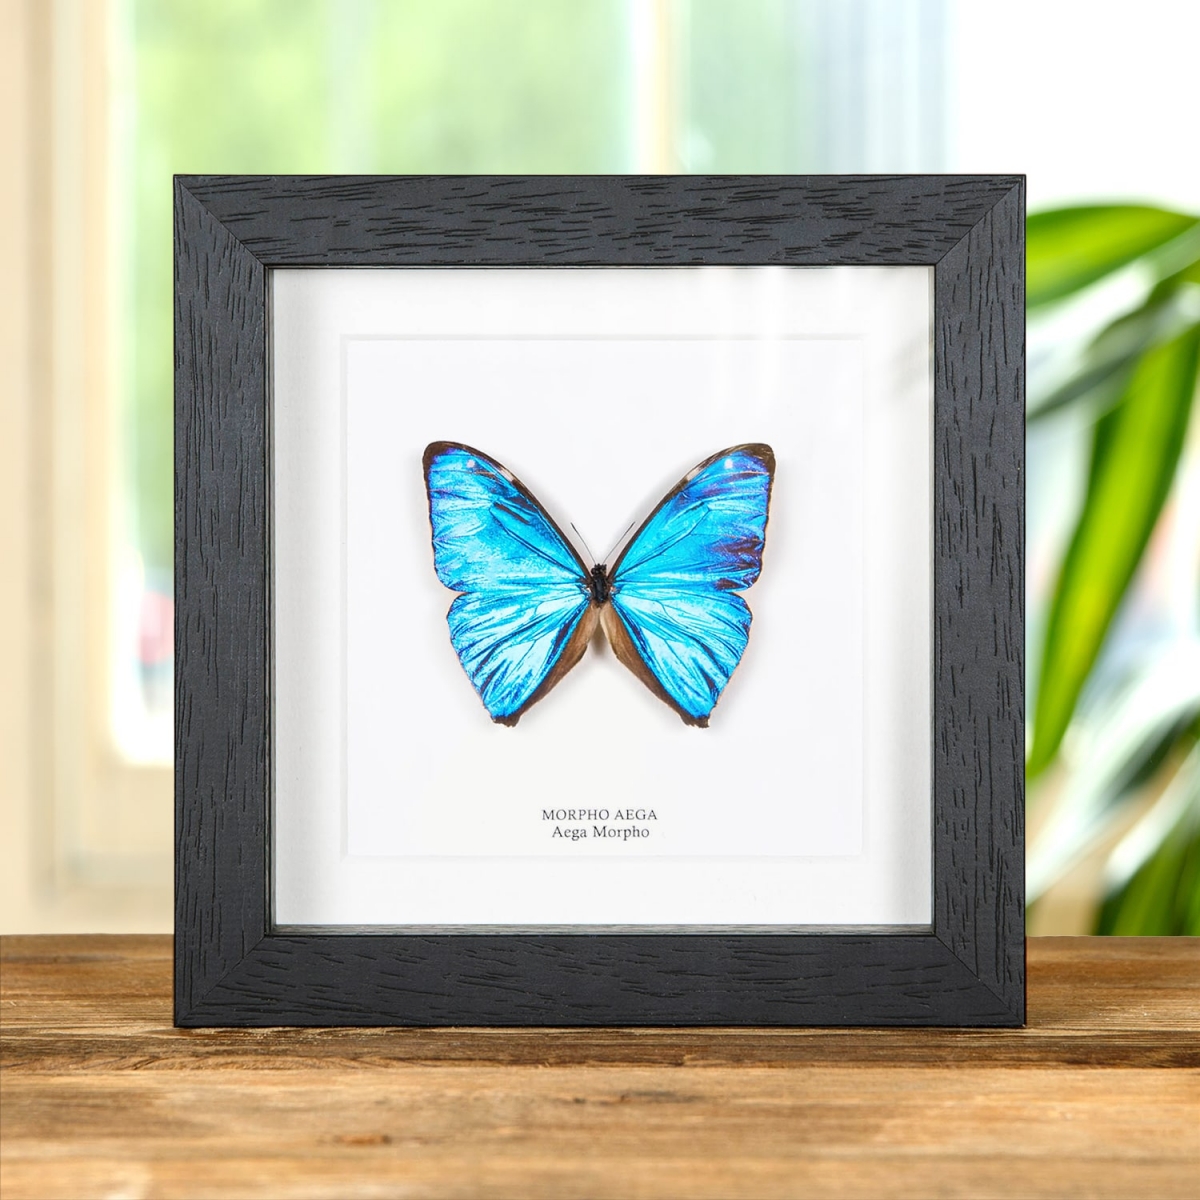 Minibeast Aega Morpho Butterfly in Box Frame (Morpho aega)